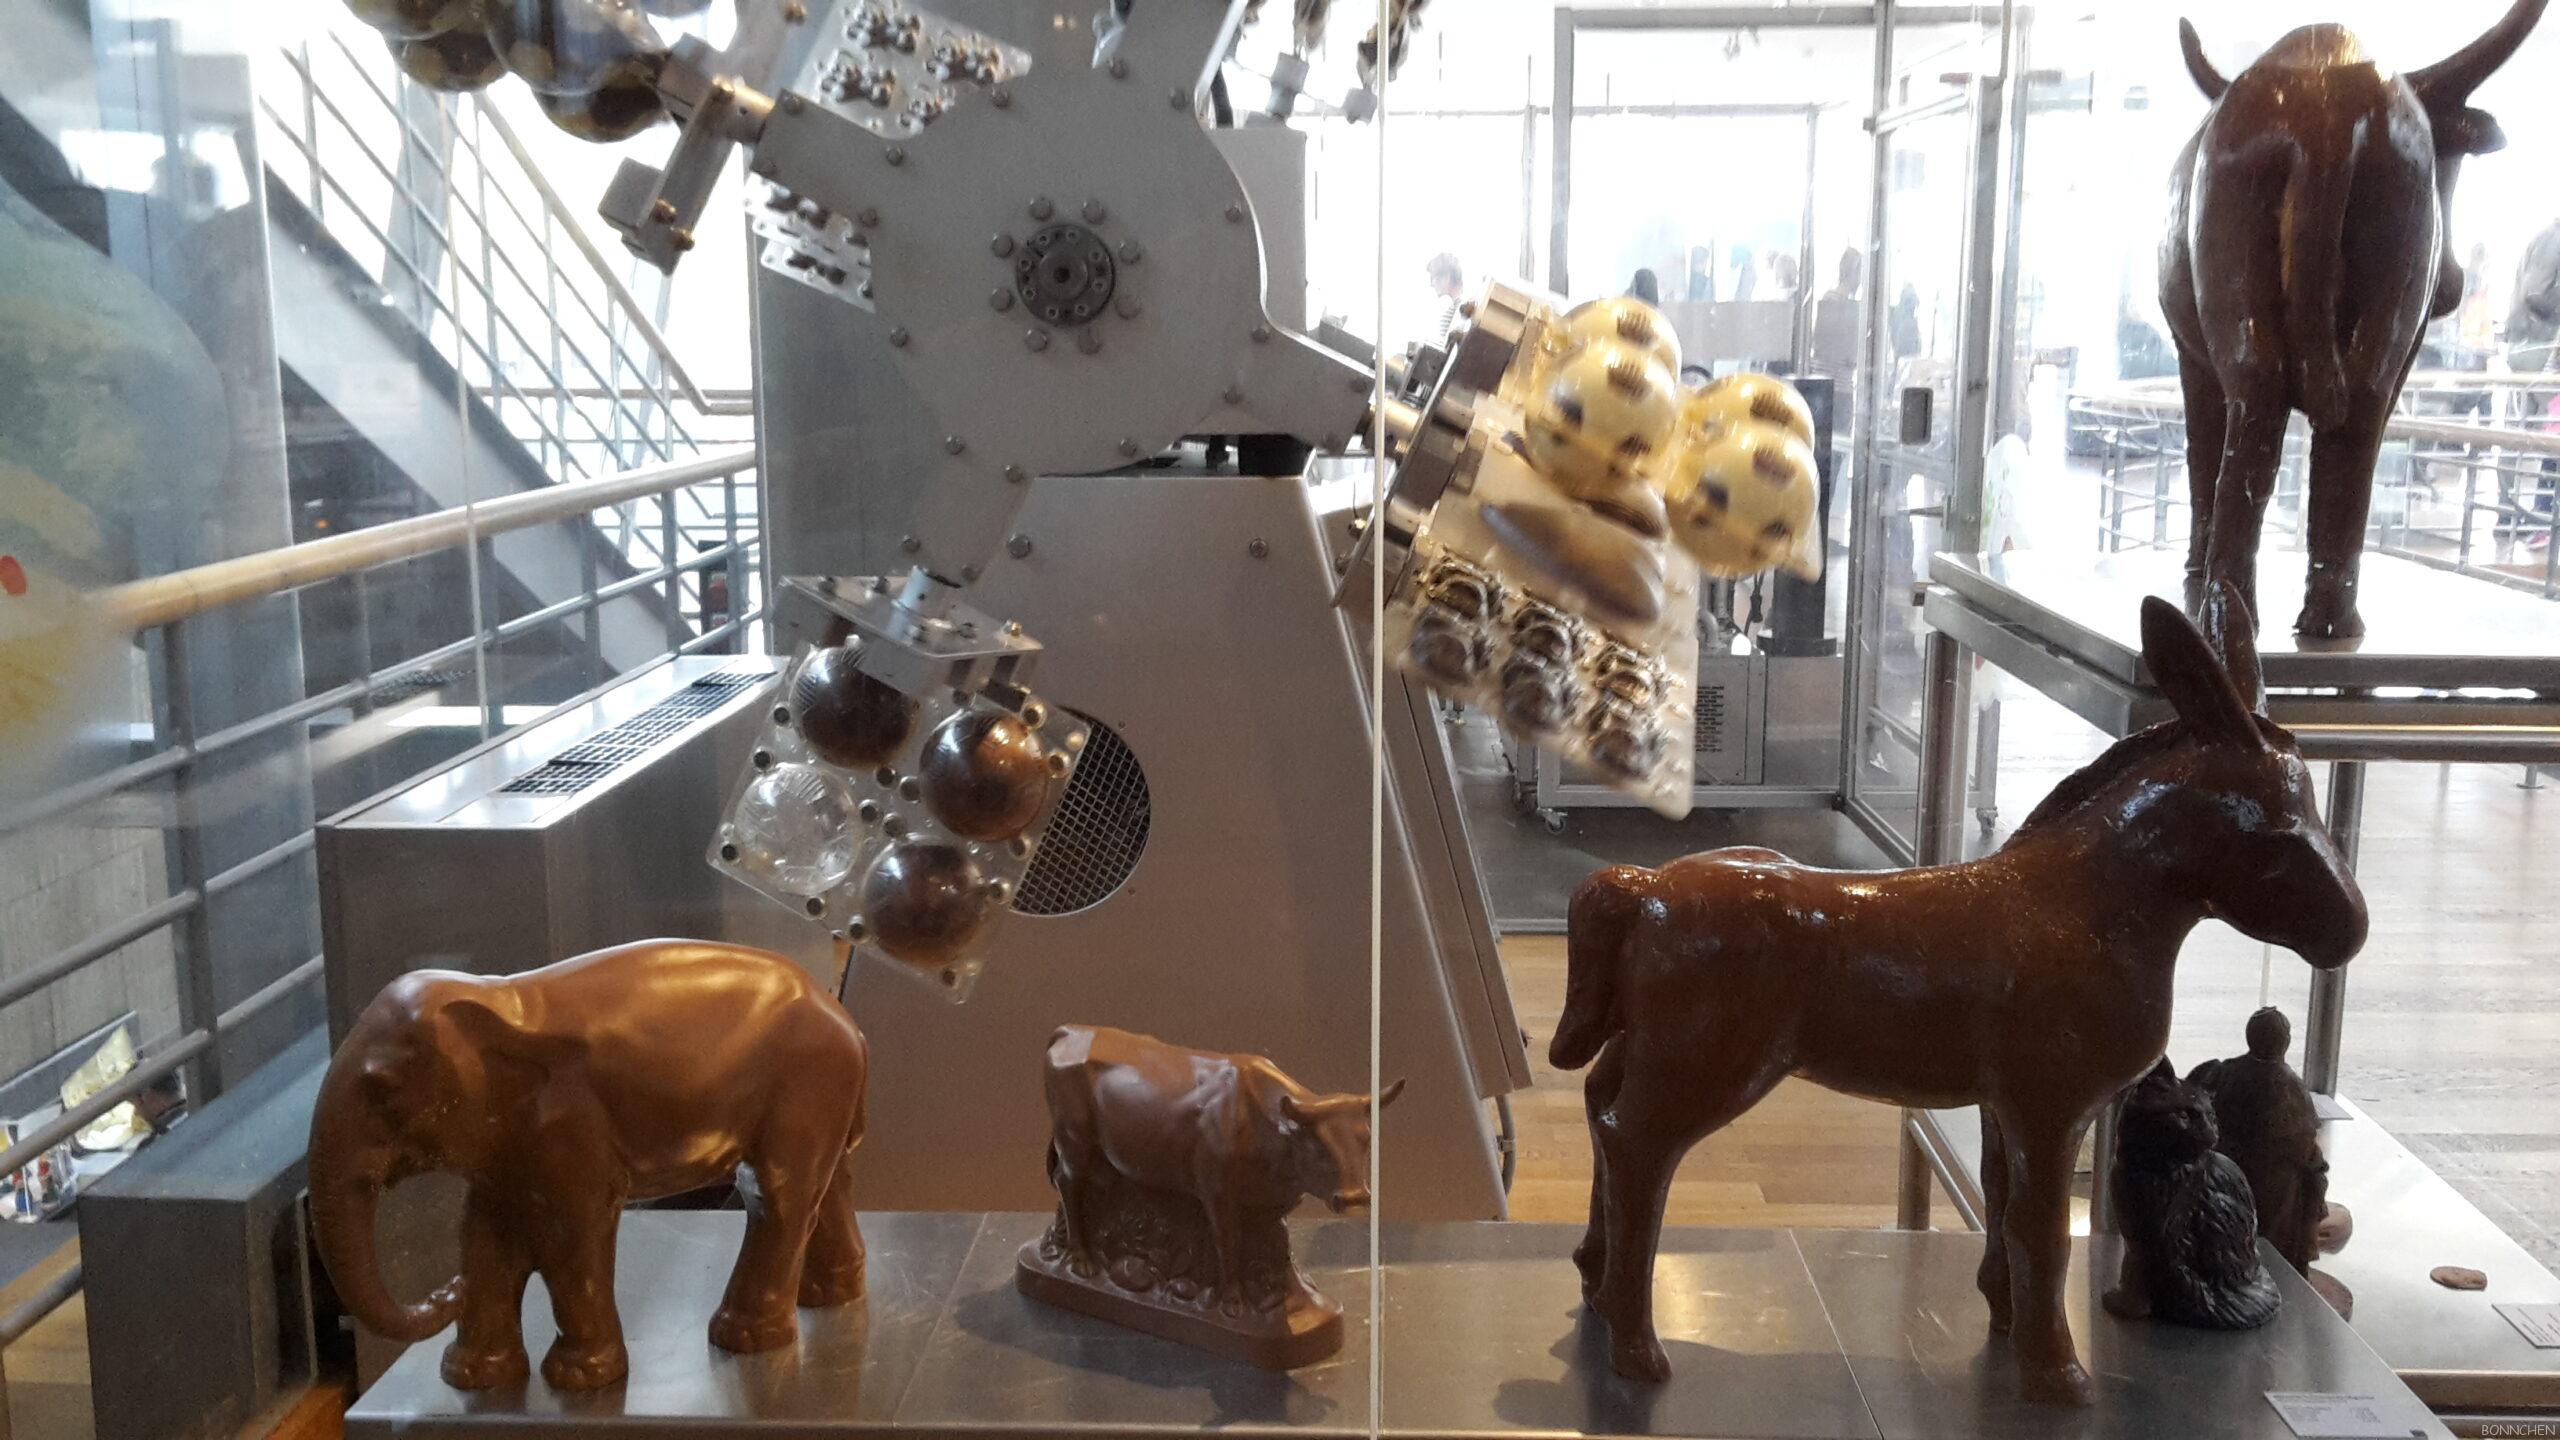 Schokoladen-Hohlfiguren in der Ausstellung im Schokoladenmuseum Köln